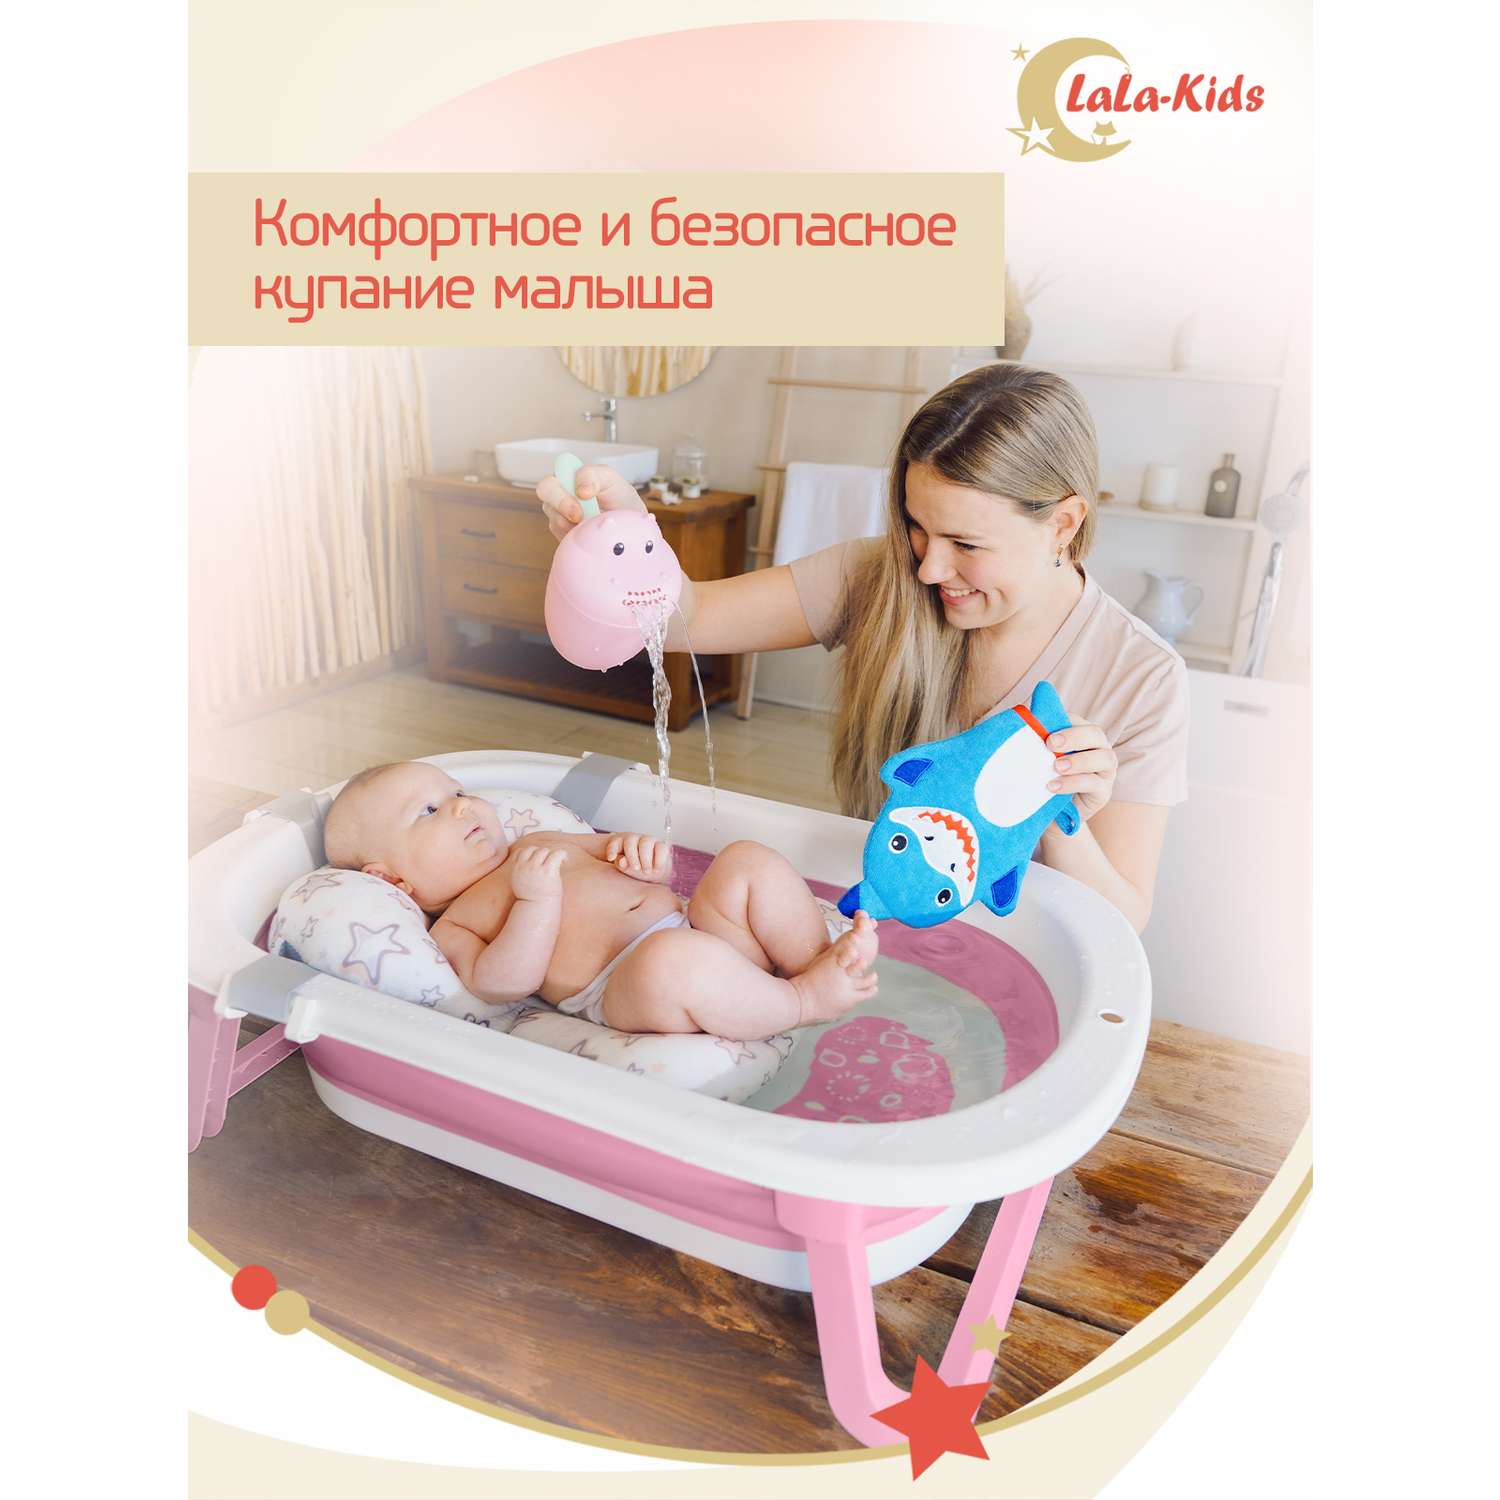 Складная ванночка LaLa-Kids для купания новорожденных с термометром - фото 2